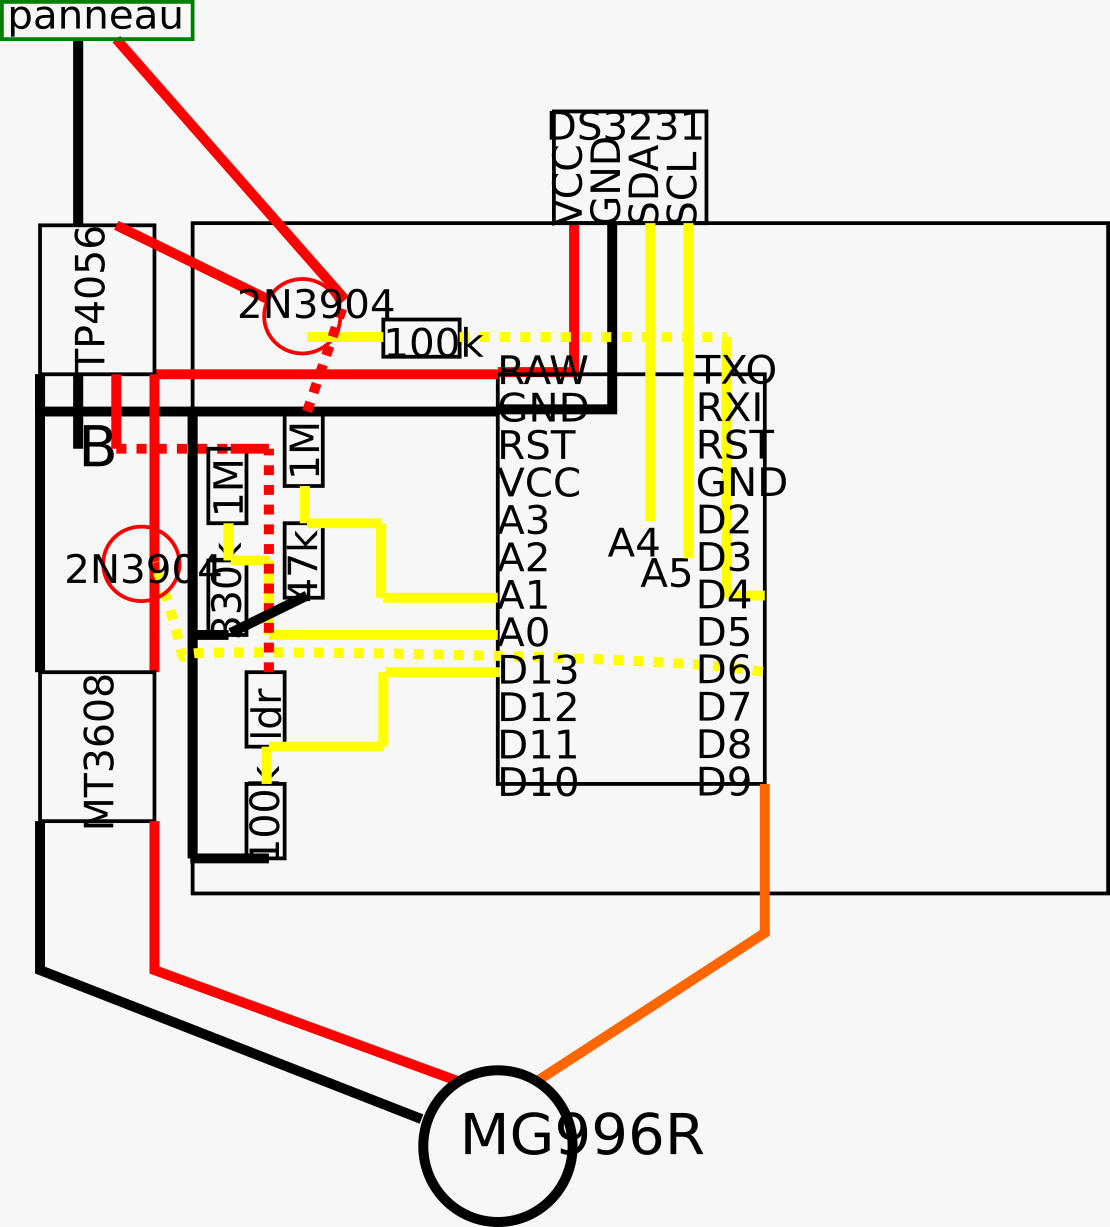 schéma de base du montage (panneau=photovoltaique, TP4056=chargeur, B=batterie 3.7v, MT3608=rehausseur de tension, DS3231=module horloge, MG996R=servomoteur)